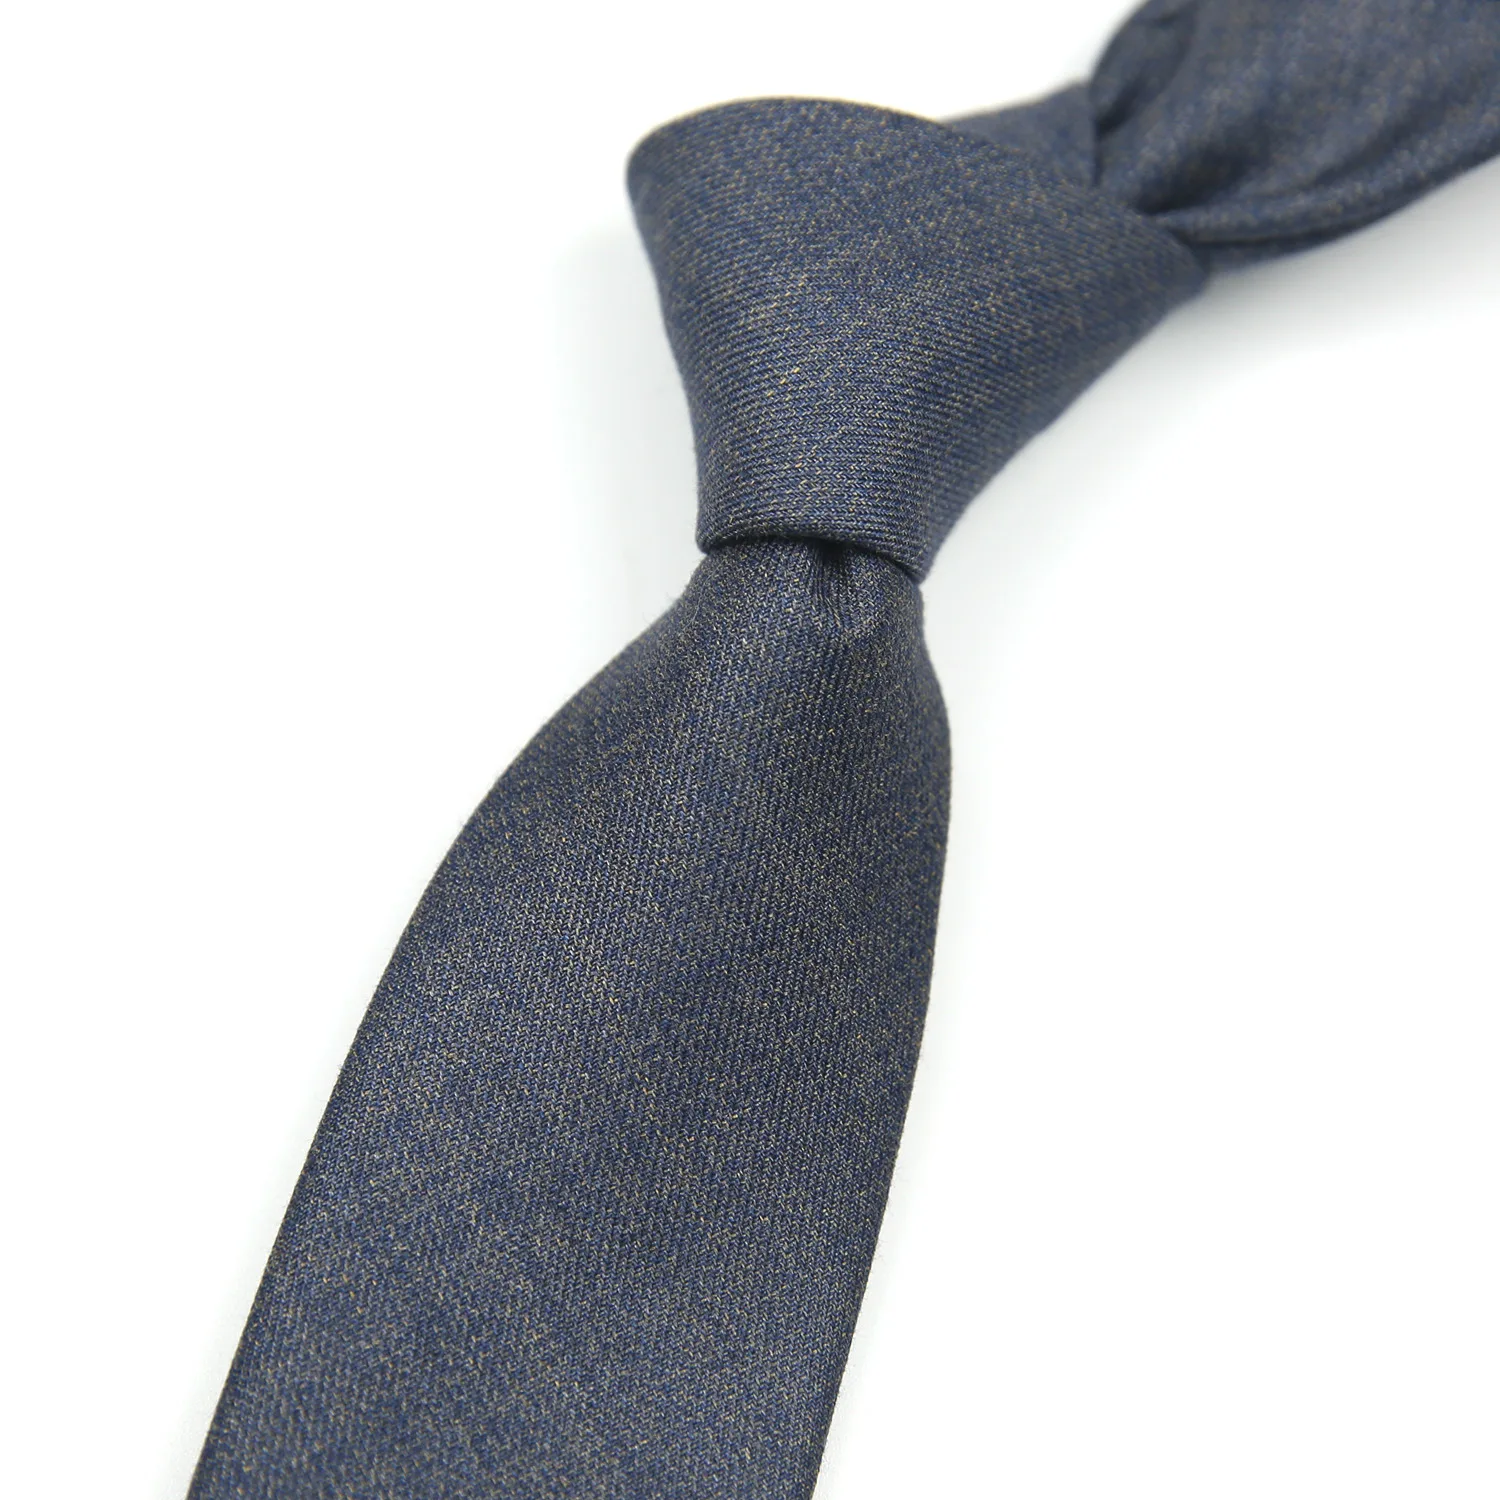 7 см Академический Британский стиль, Хаки, Винно-красный, черный, однотонный полосатый нейлоновый галстук жаккардового переплетения для мужчин, деловой свадебный галстук 4